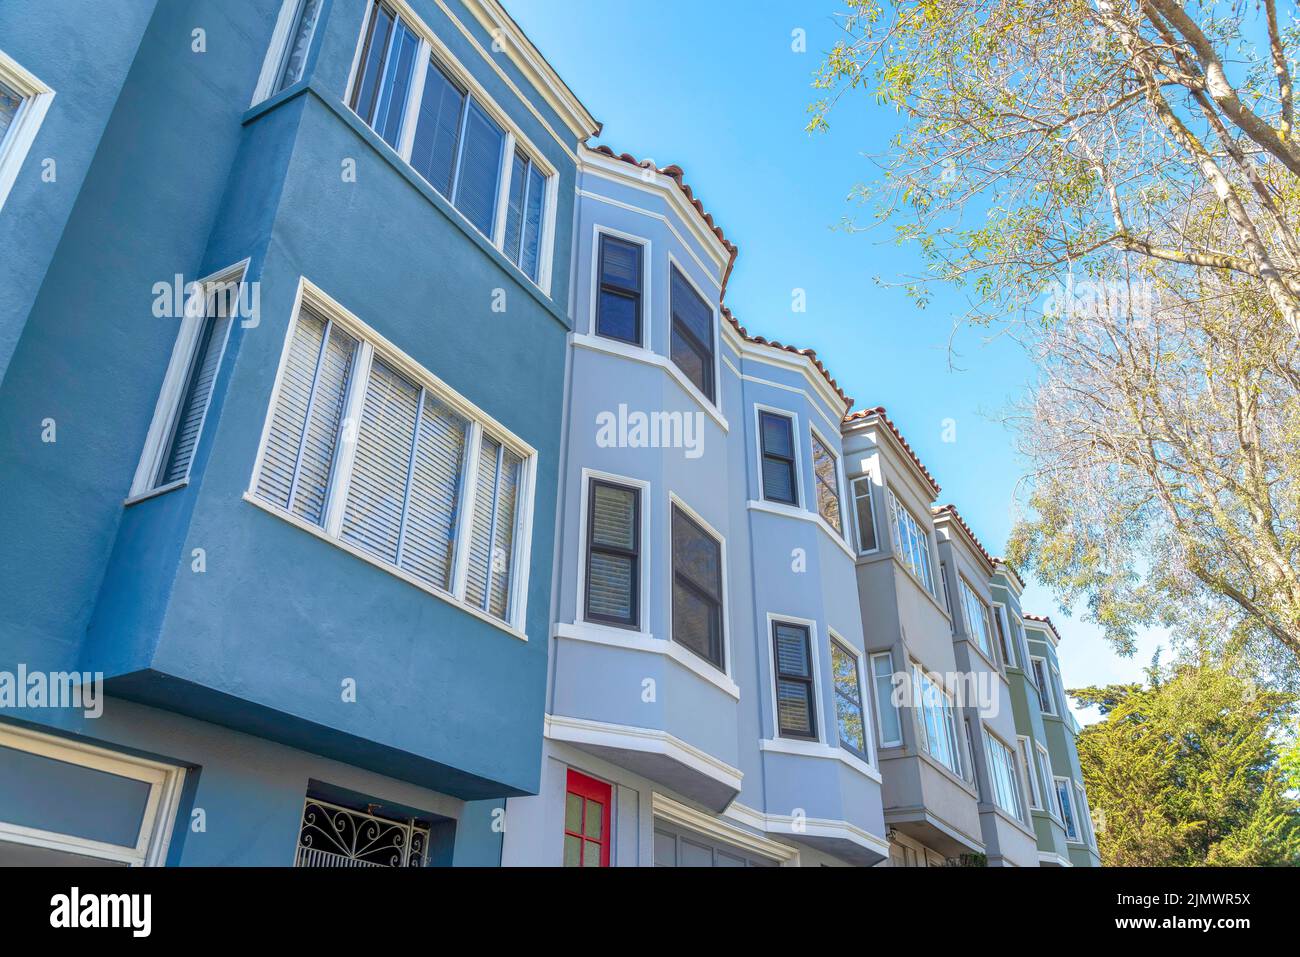 Façade extérieure des maisons de ville dans une rangée avec différentes couleurs de mur à San Francisco, Californie. Maisons de ville avec fenêtres en forme d'arc et de baie et vue à angle bas Banque D'Images